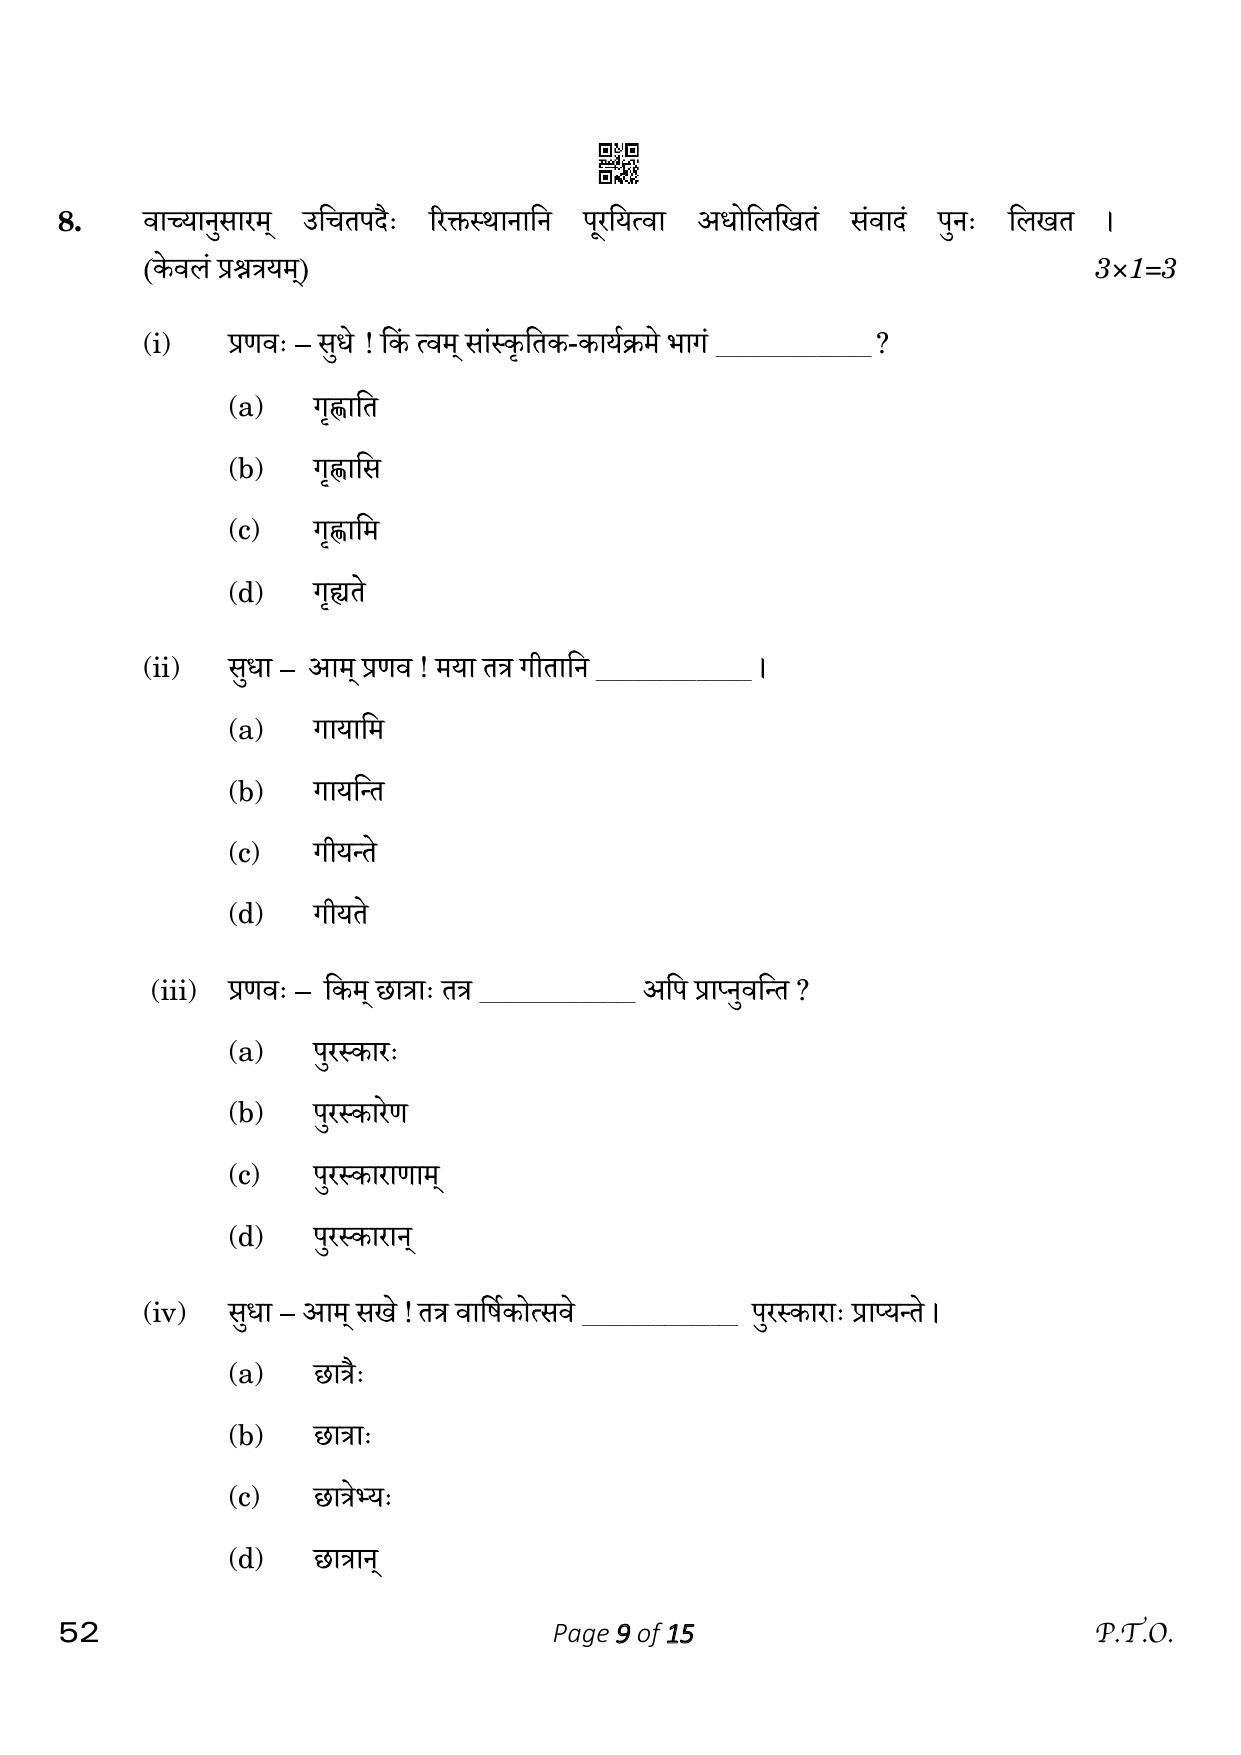 CBSE Class 10 Sanskrit (Compartment) 2023 Question Paper - Page 9